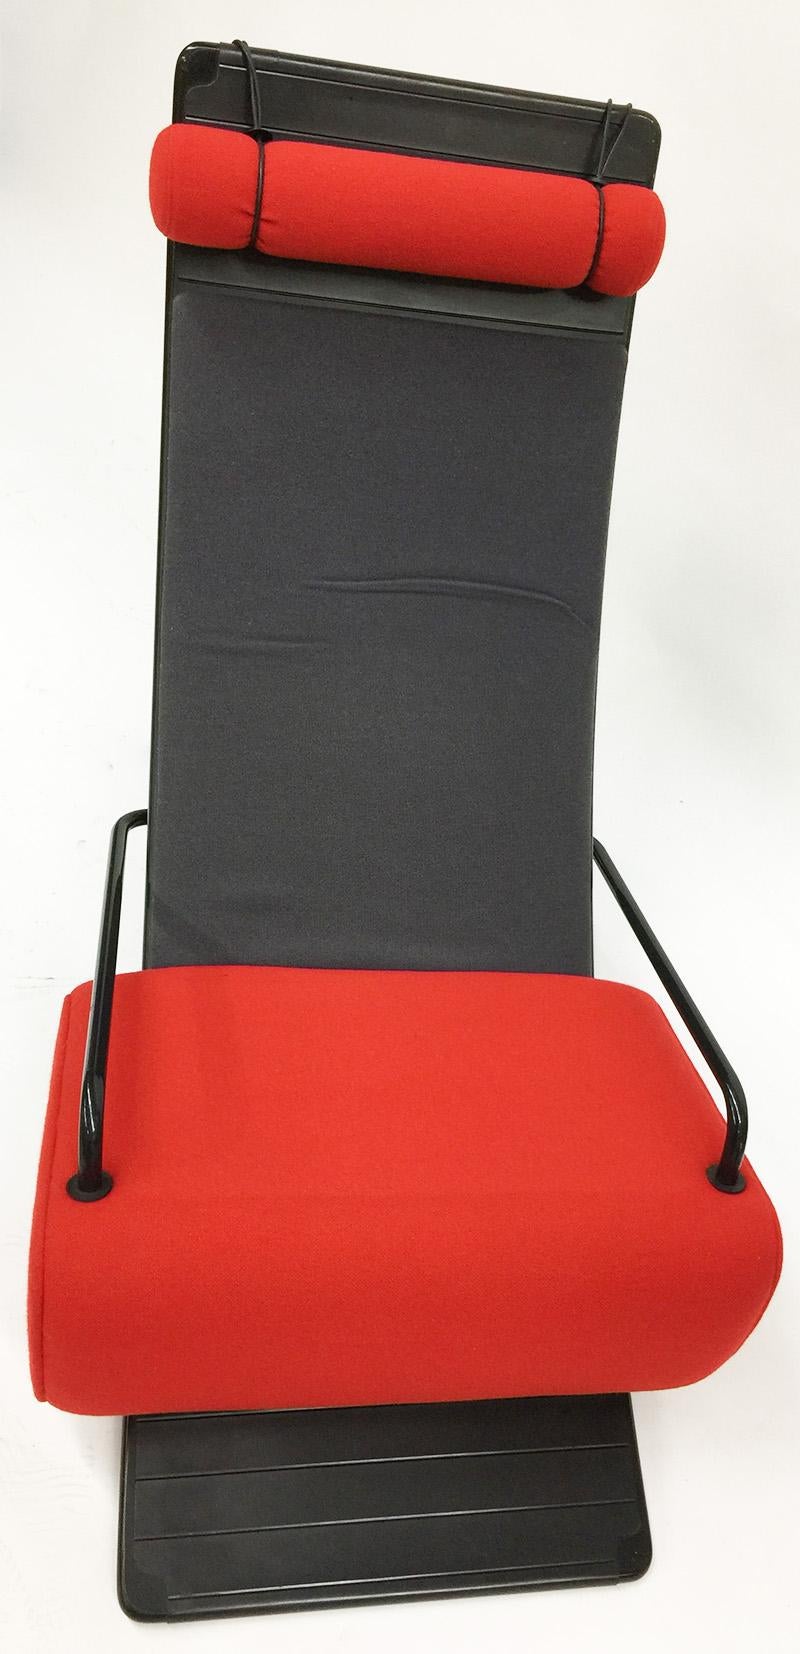 Artifort Modell 045 Mobiles lounge chair entworfen von Marcel Wanders (20. Jahrhundert) im Angebot